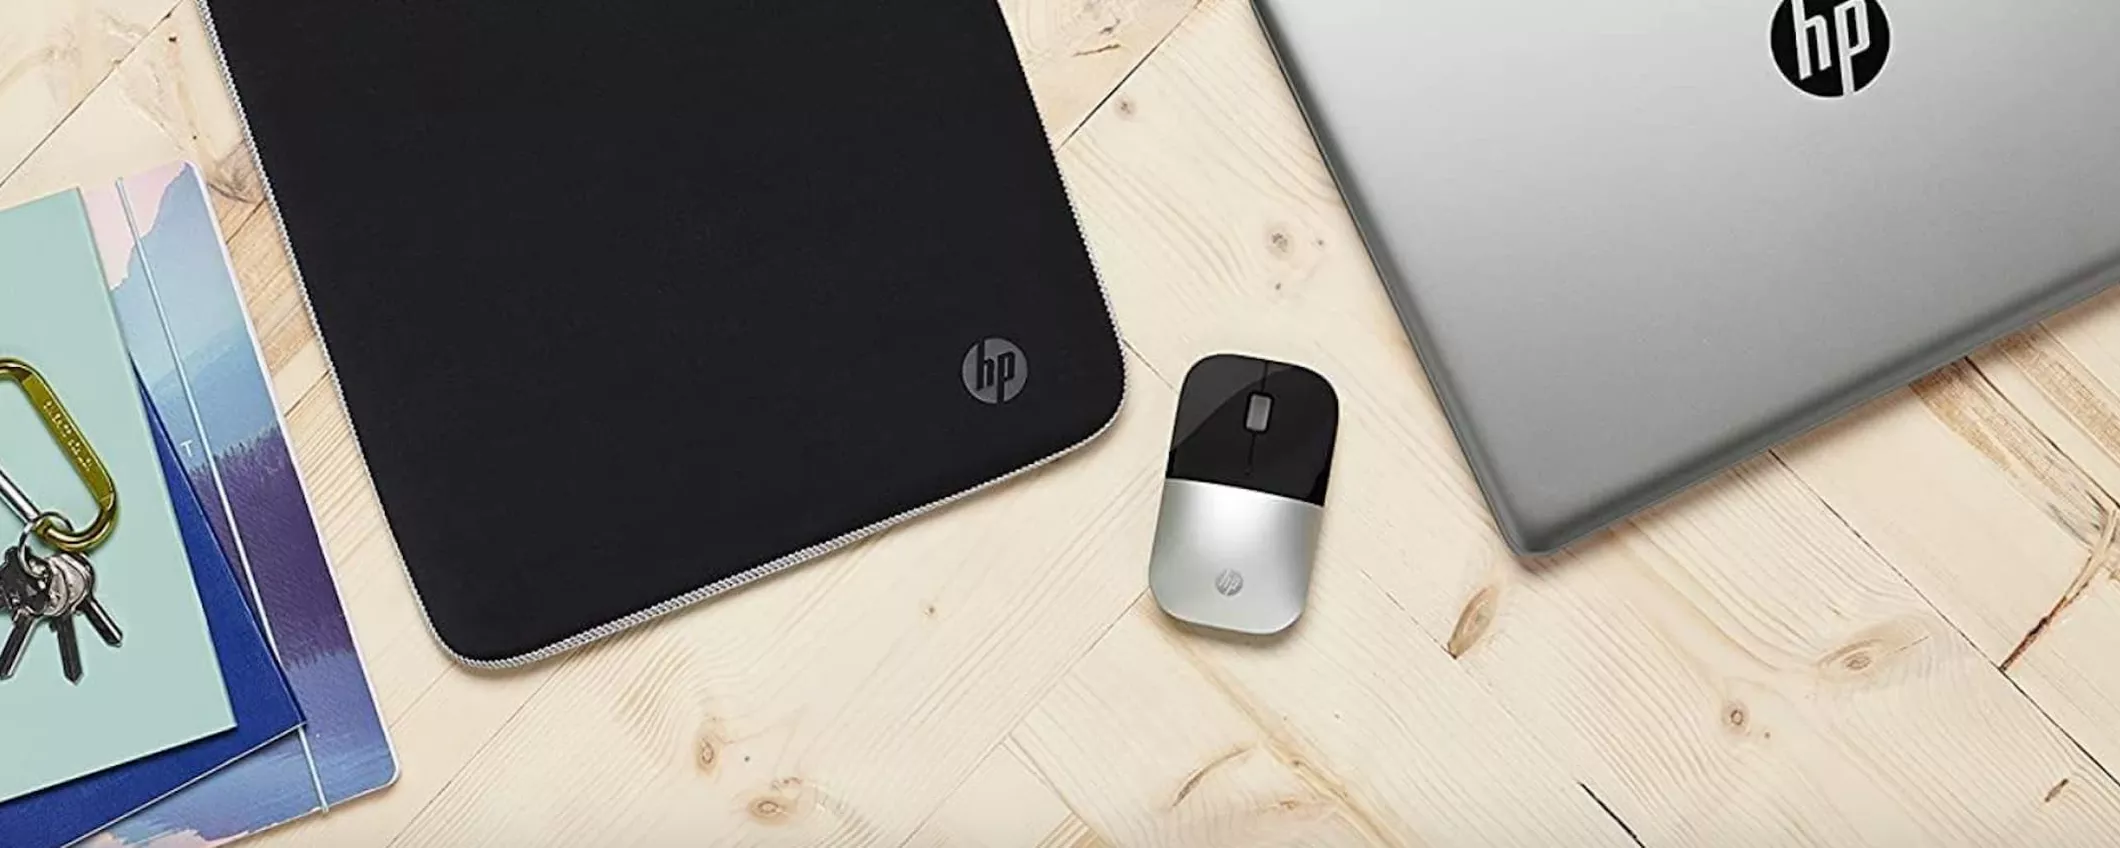 QUESTO mouse wireless HP è in vendita a prezzo REGALO su Amazon